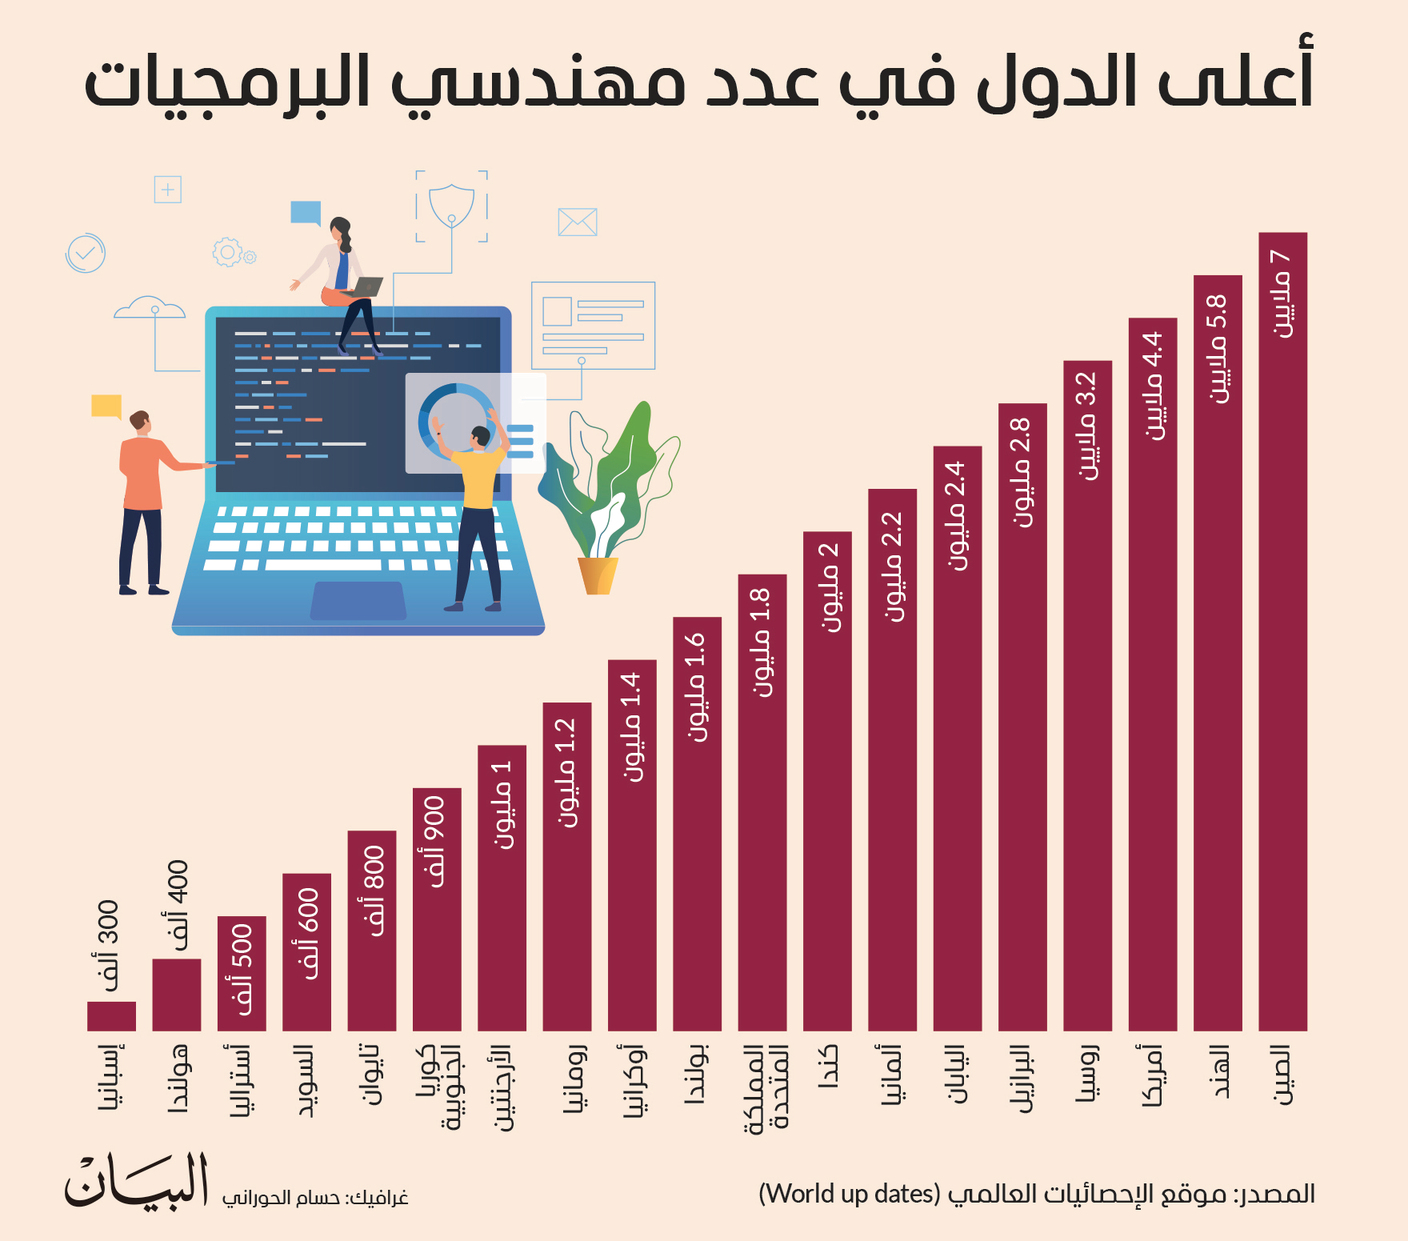 أعلى الدول في عدد مهندسي البرمجيات